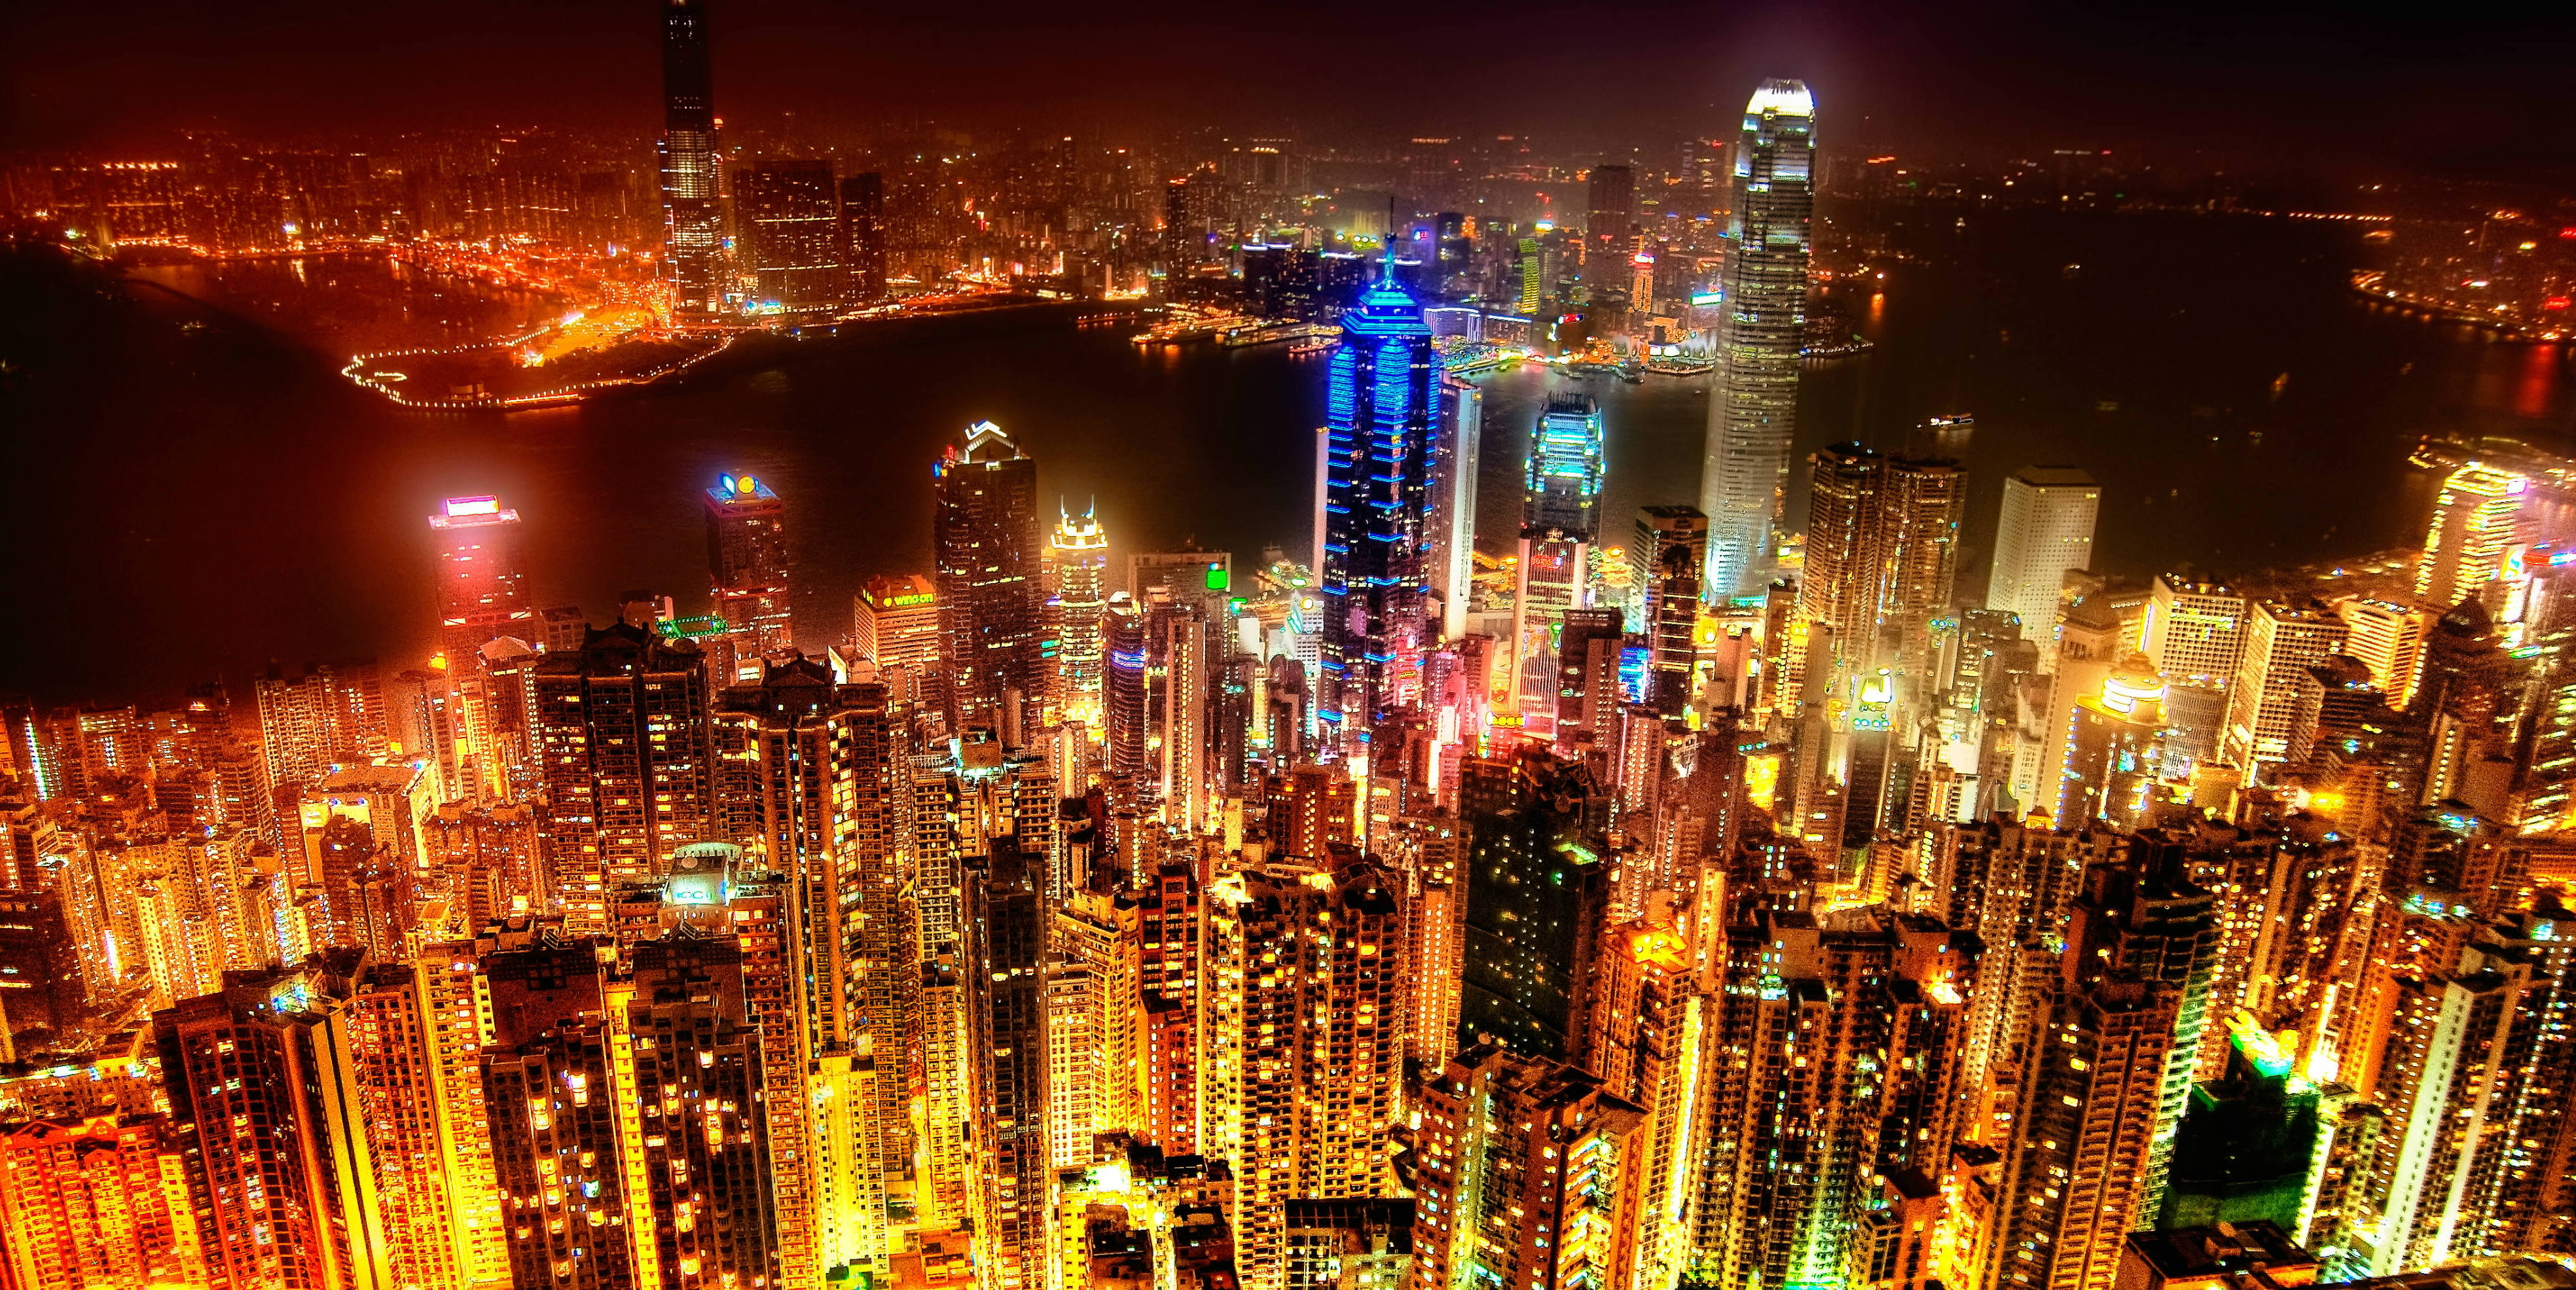 Hong Kong skyline by Spreng Ben